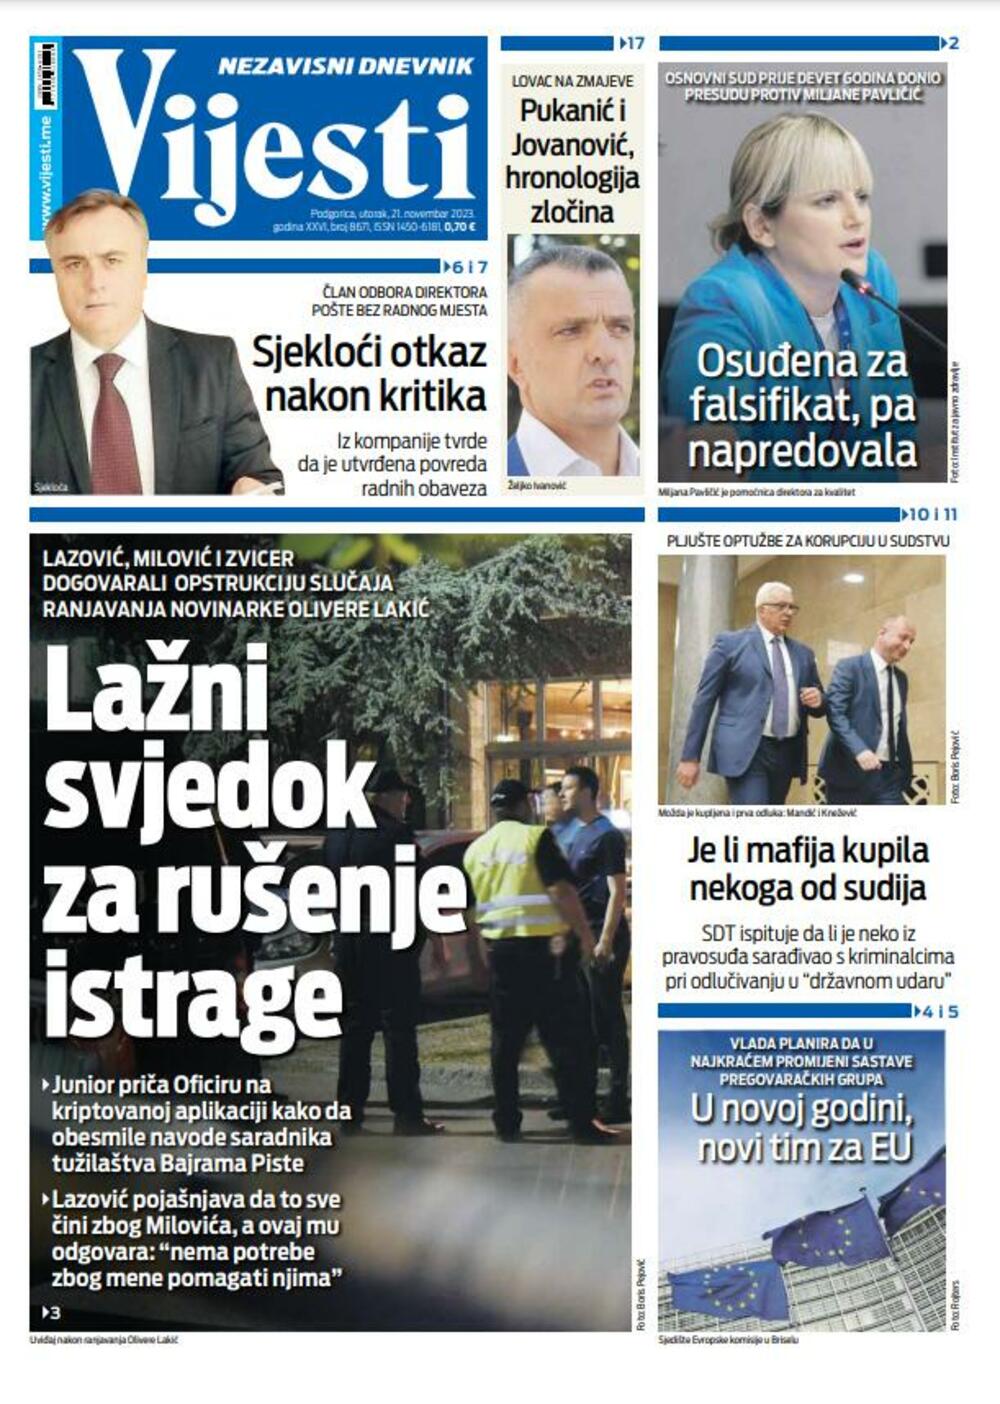 Naslovna strana "Vijesti" za 21. novembar 2023., Foto: Vijesti